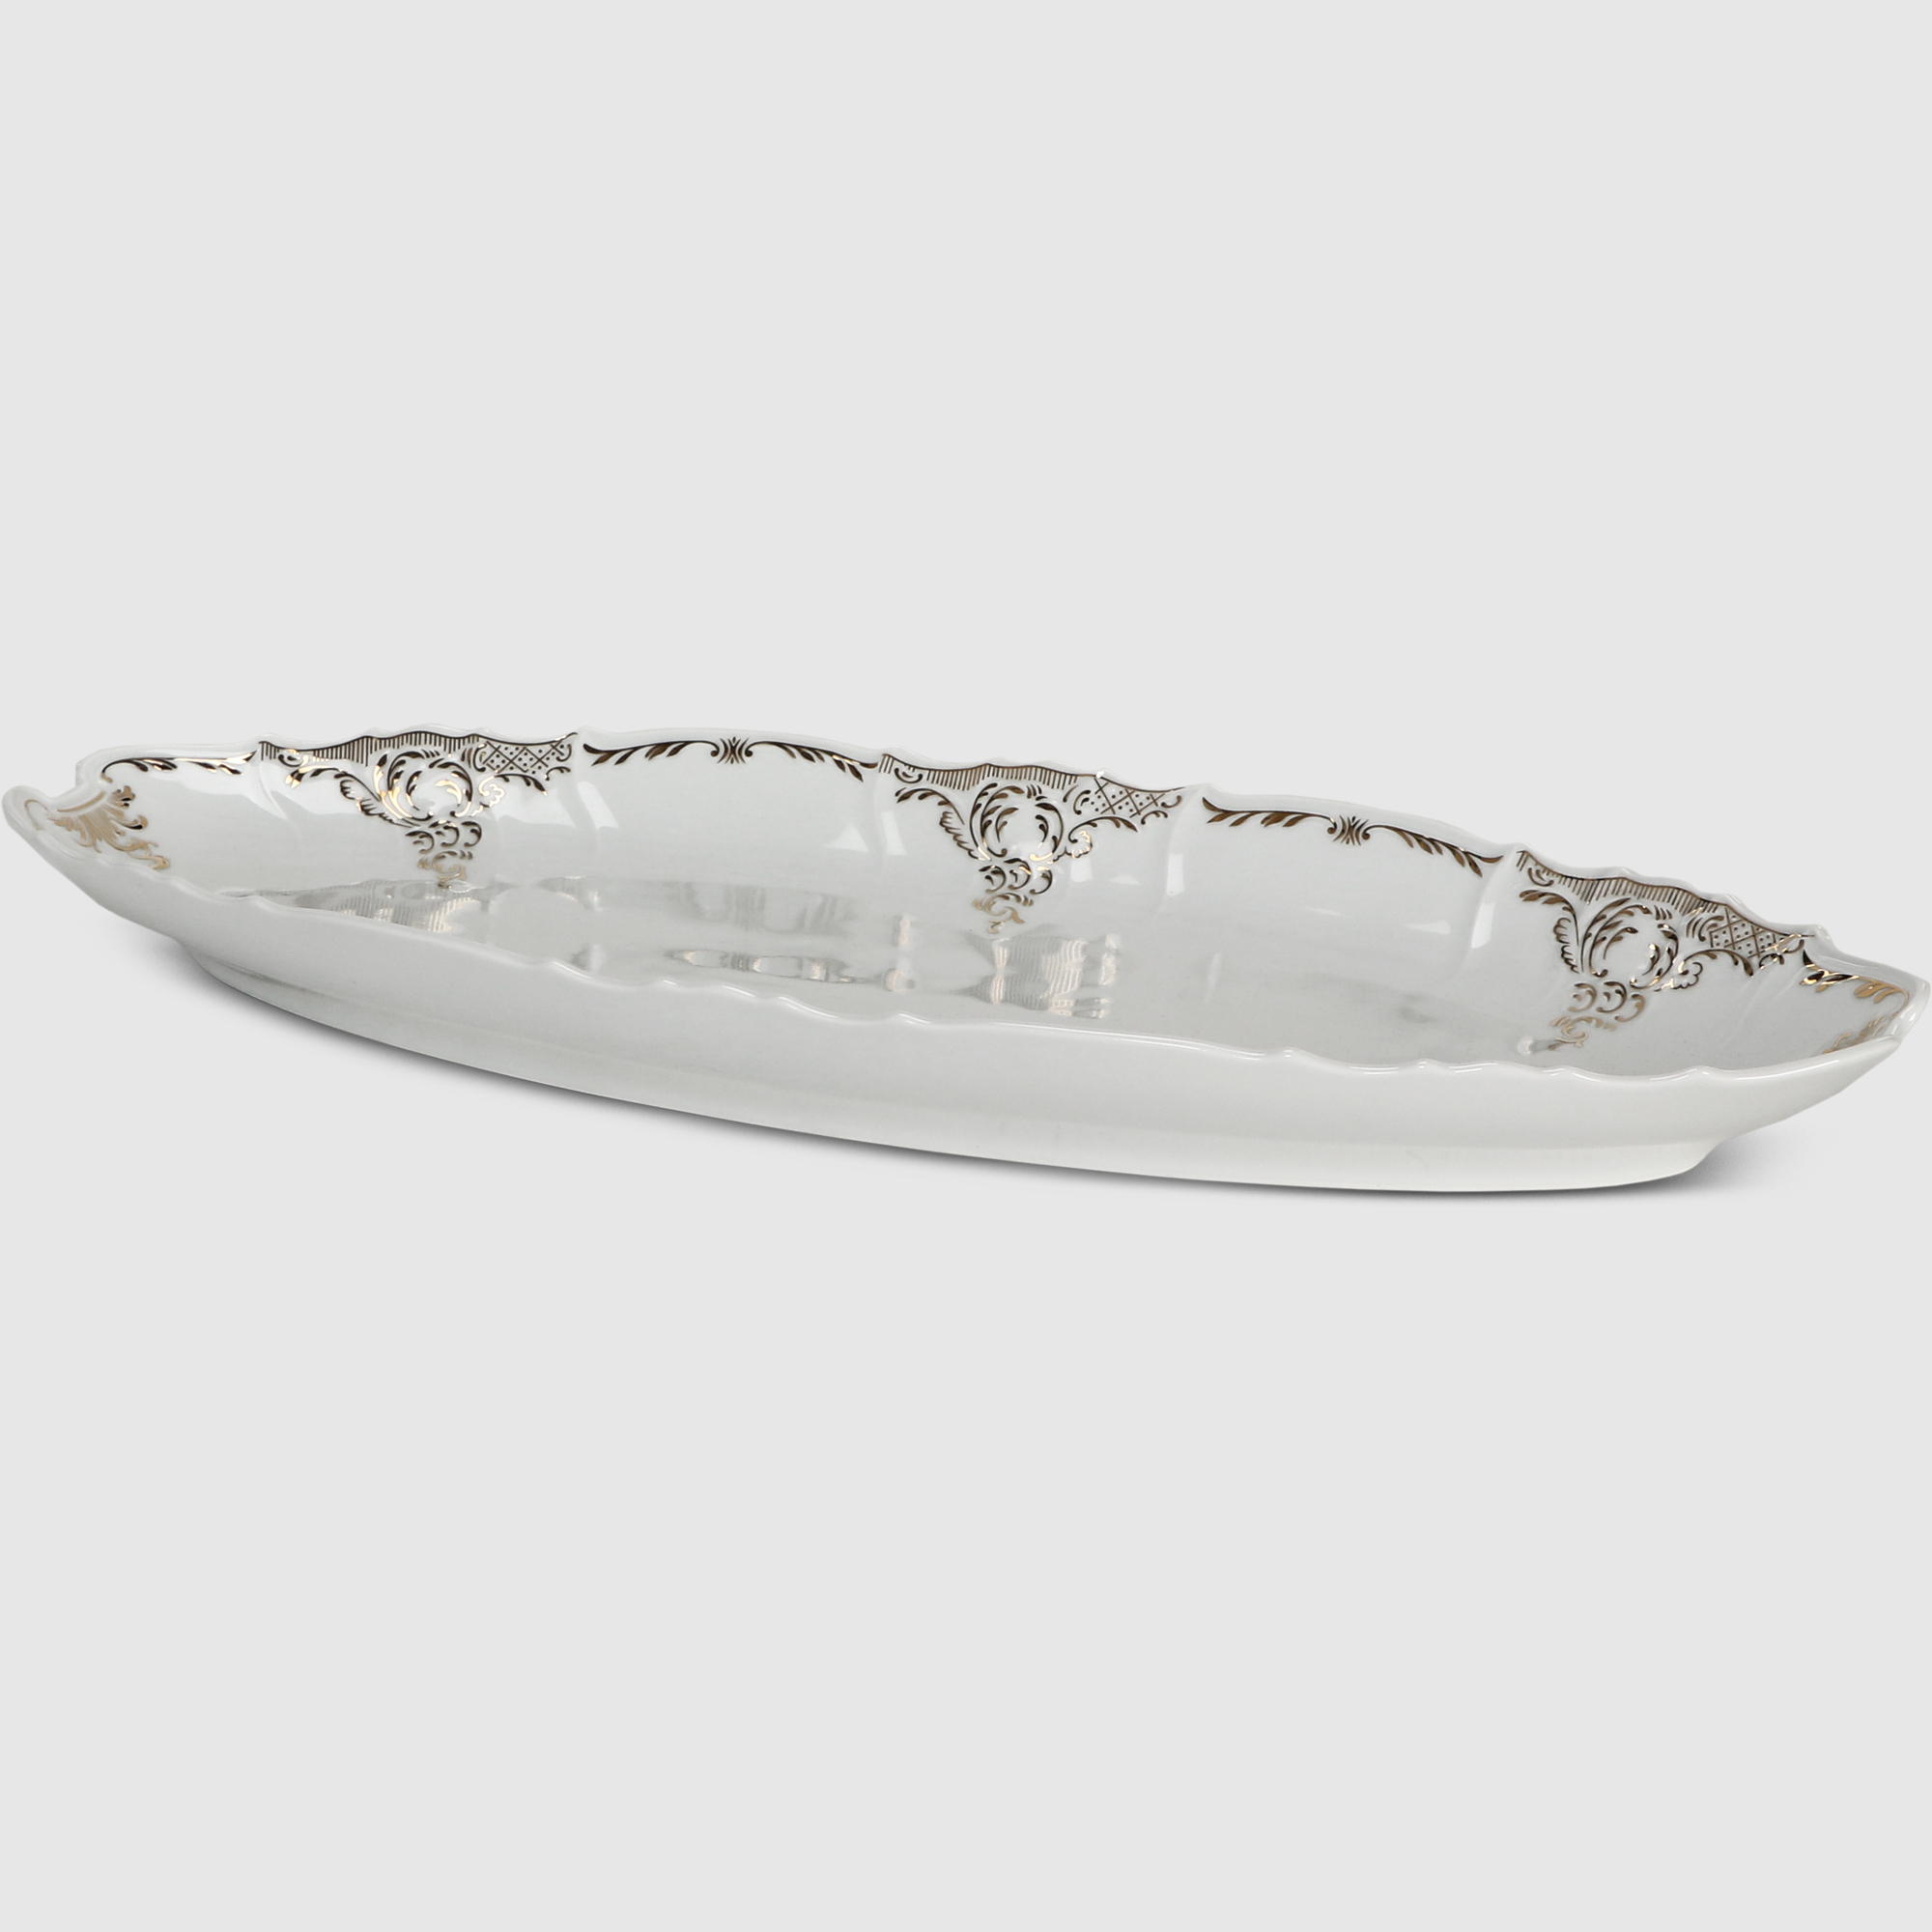 

Блюдо для рыбы Bernadotte Золотой орнамент 52 см, Белый